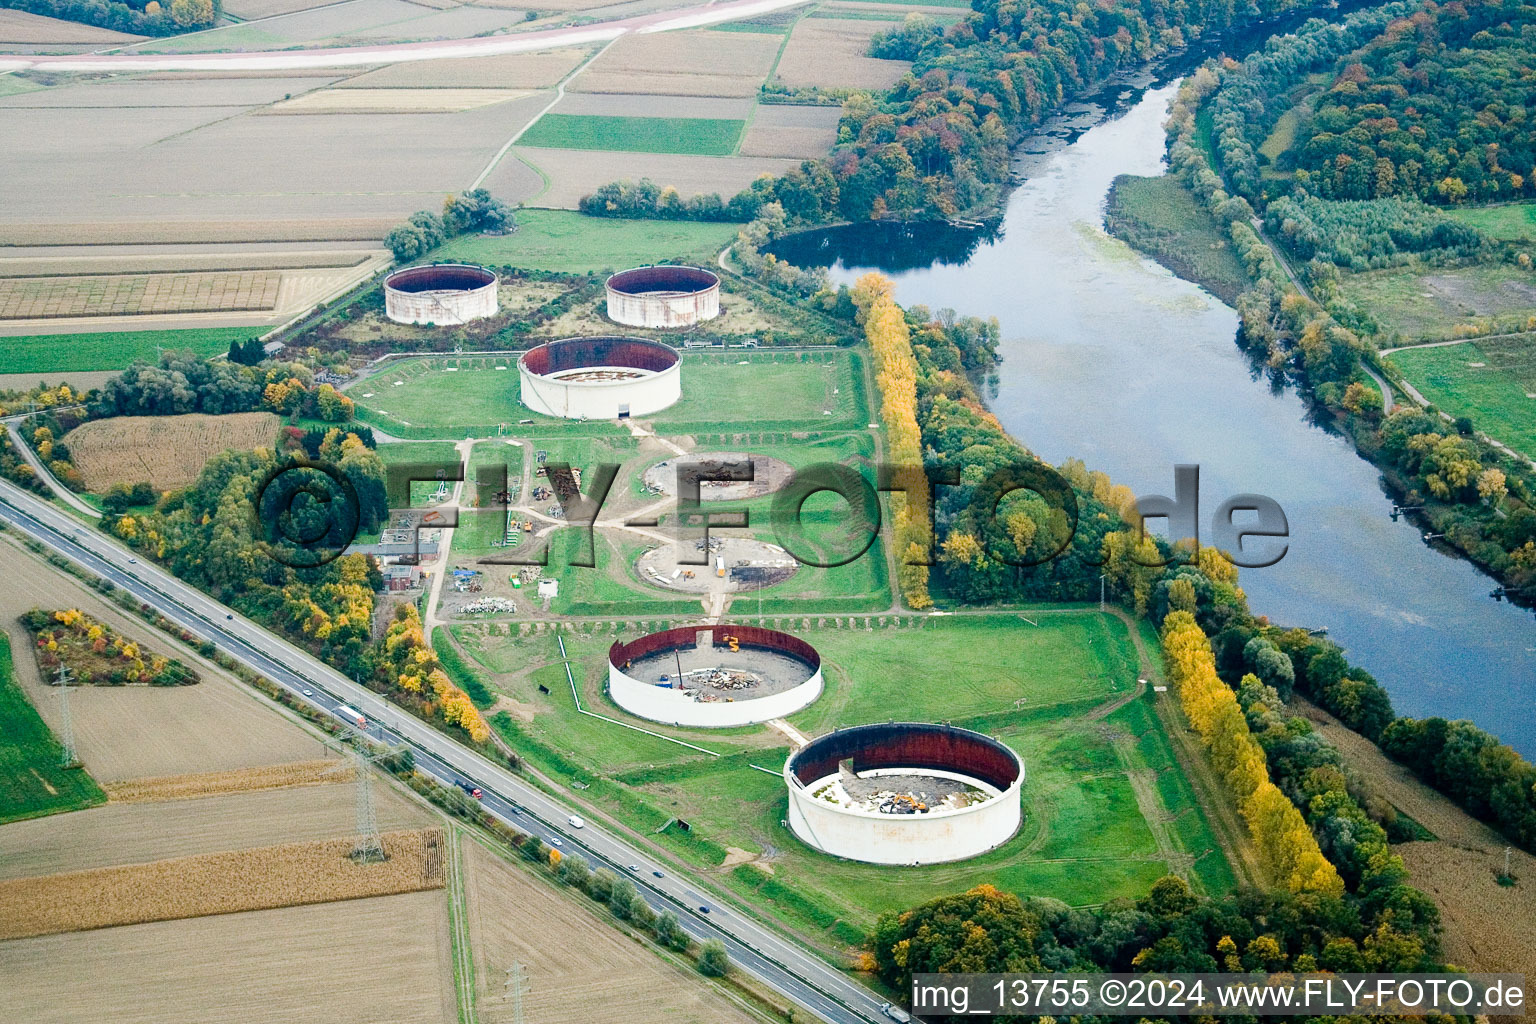 Vue aérienne de Parc de stockage d'huile minérale de Wintershall en cours de démantèlement à Jockgrim dans le département Rhénanie-Palatinat, Allemagne